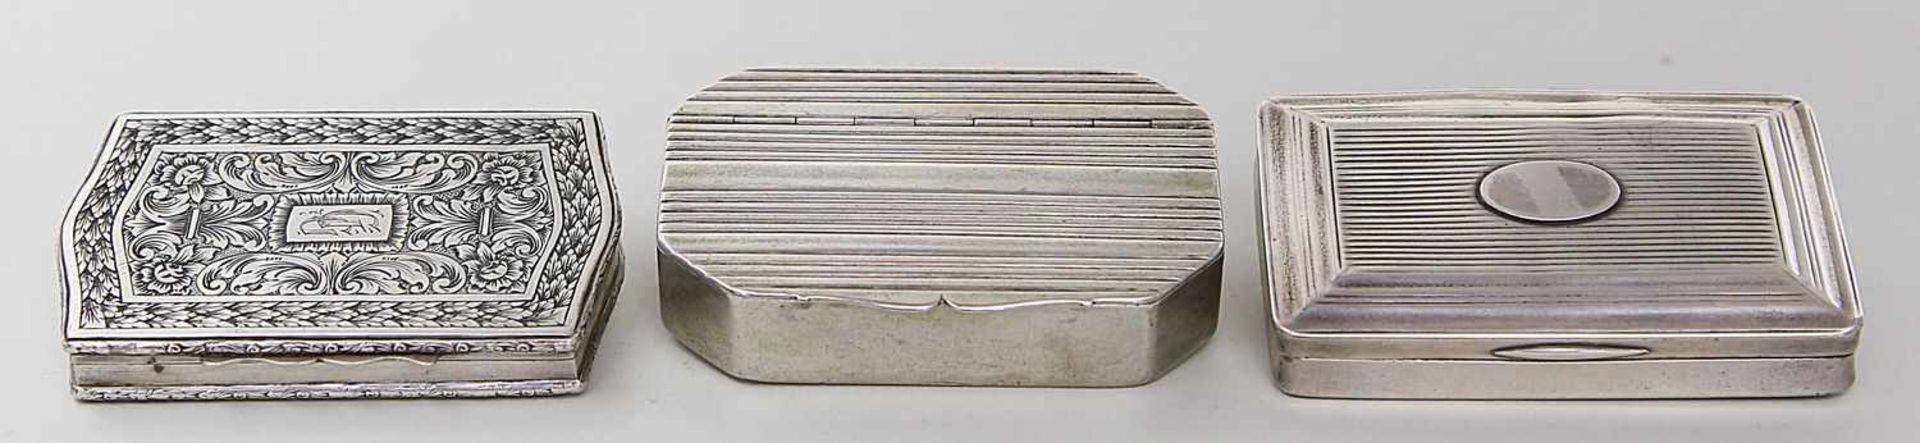 Drei Tabatieren.Silber, teils lötig gestempelt, 277 g. Verschiedene Ausführungen mit